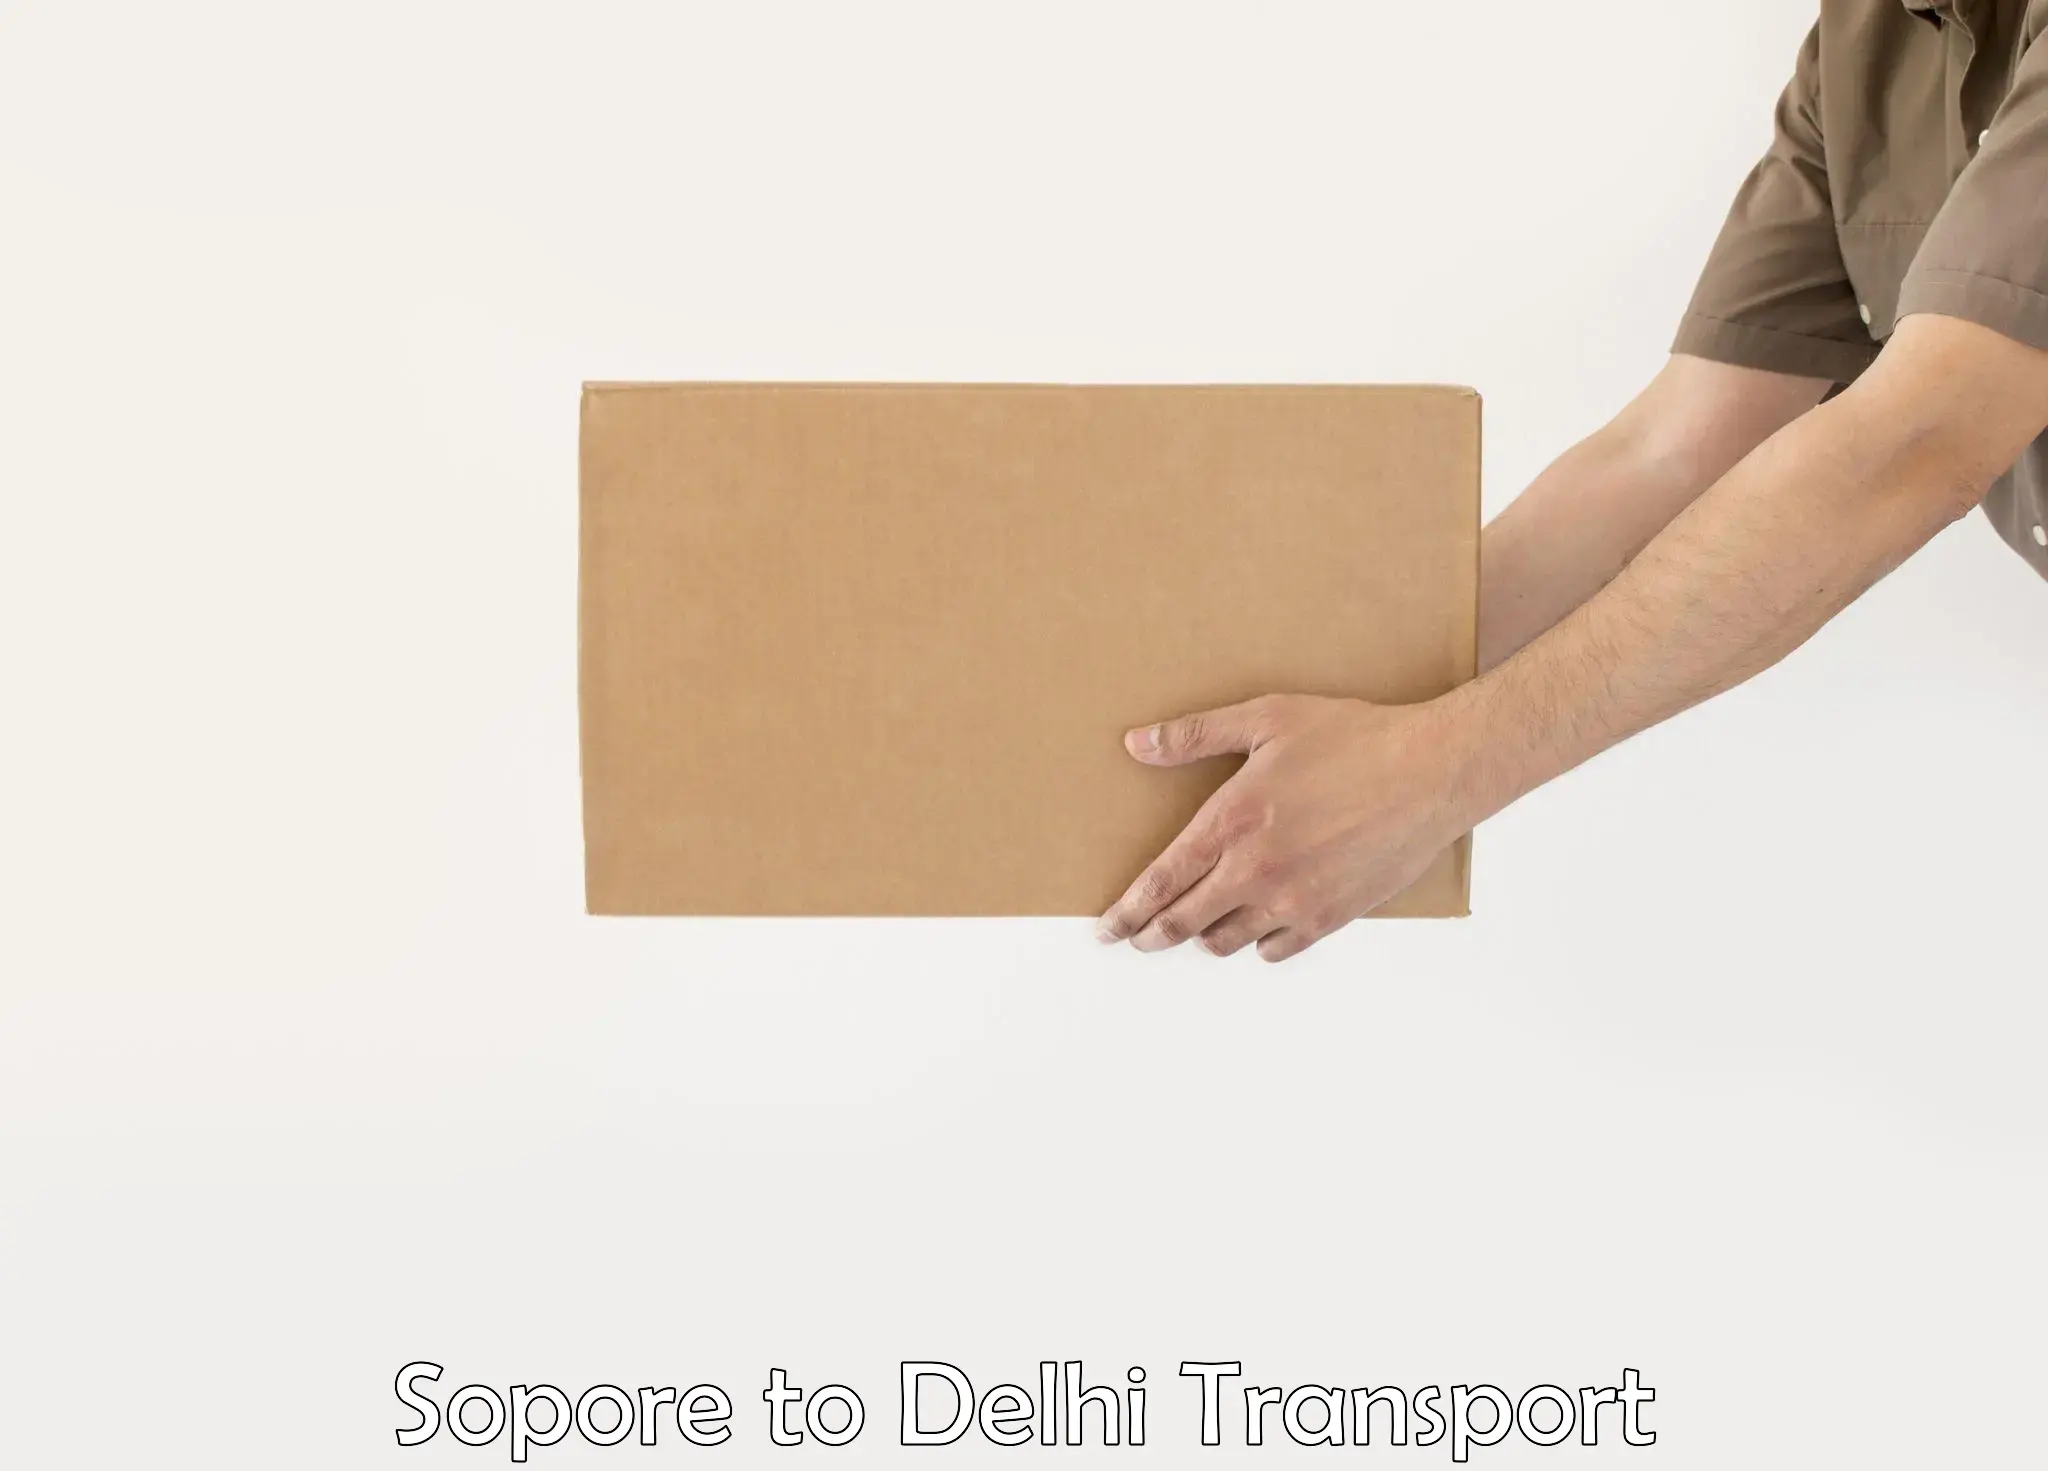 Two wheeler parcel service Sopore to IIT Delhi